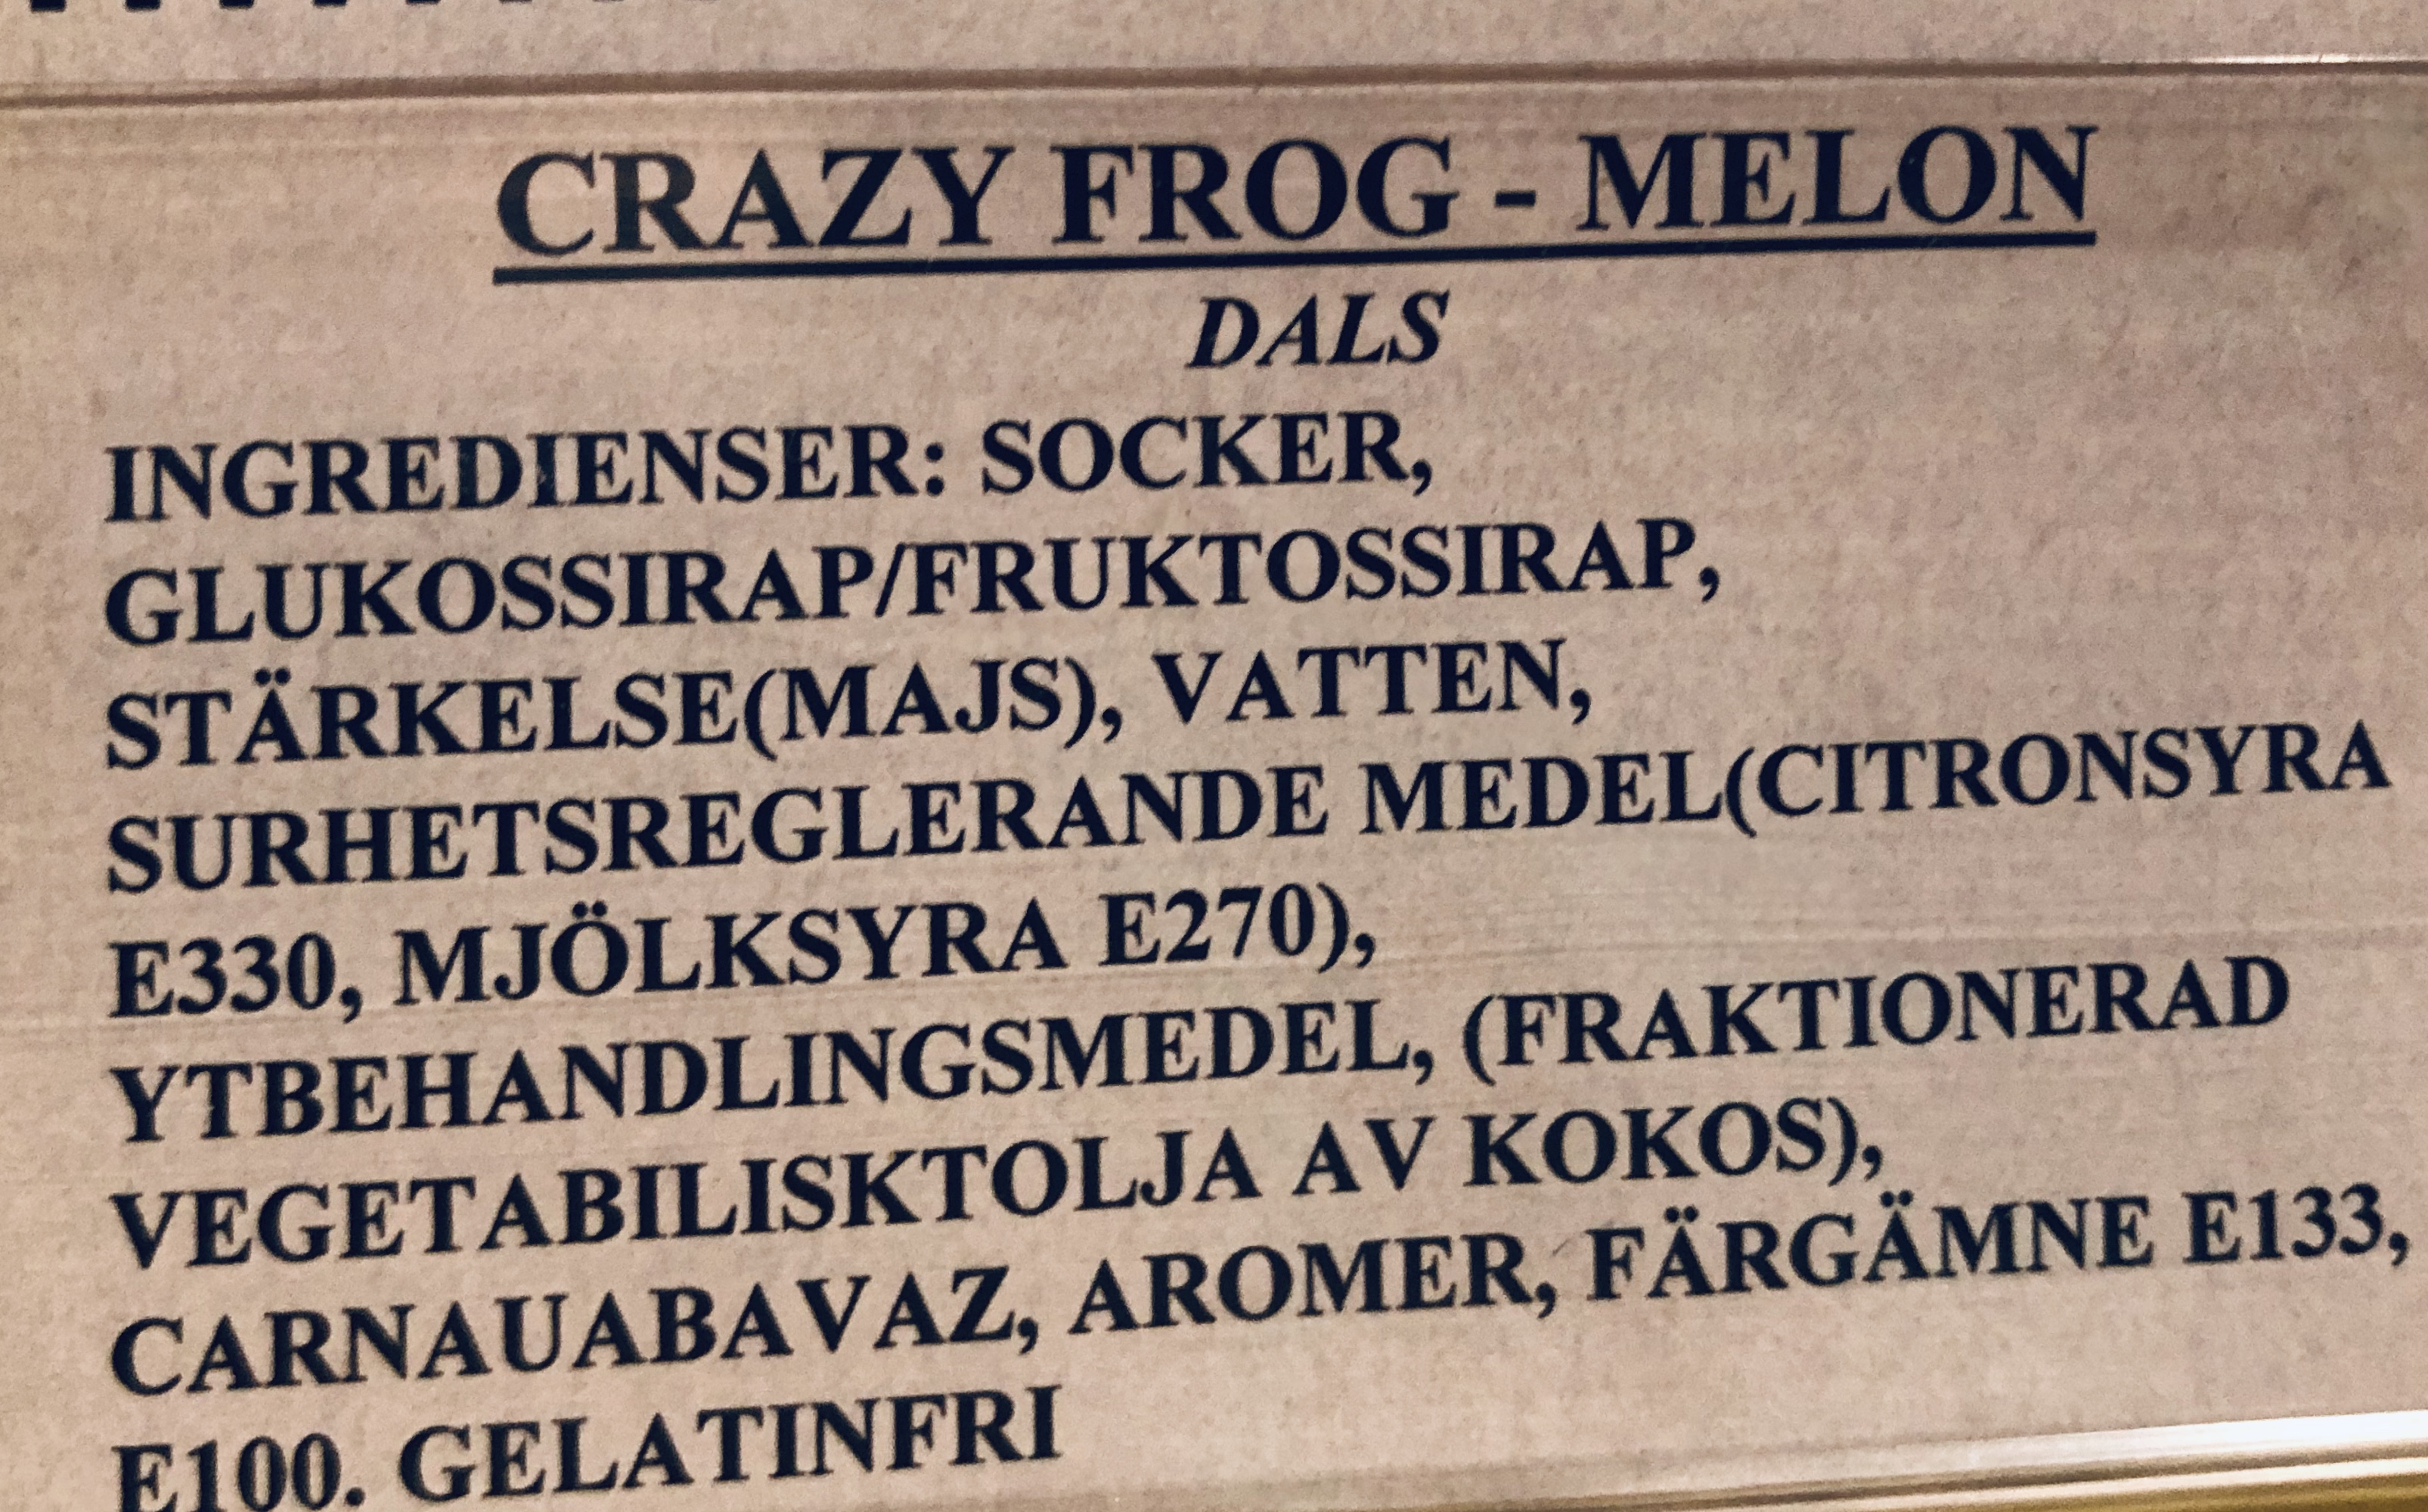 Crazy frog melon